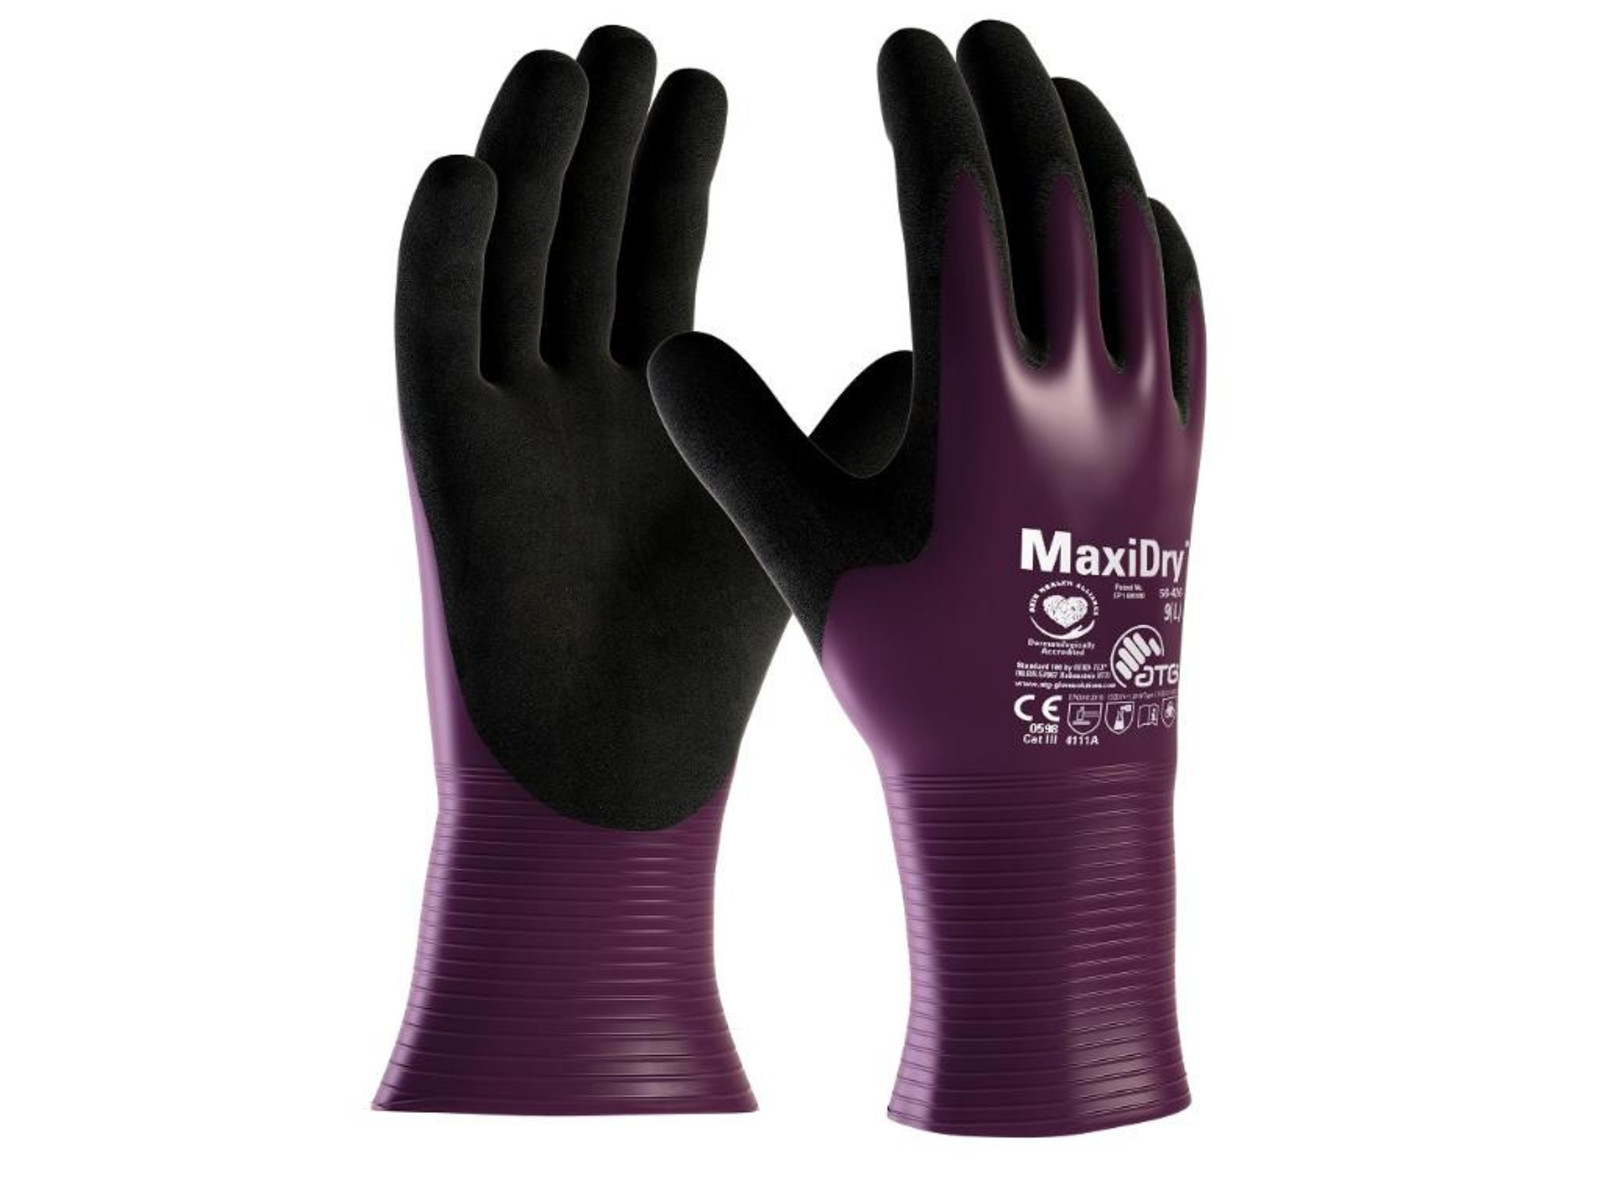 Pracovné rukavice ATG maxi dry 56-426nylon - veľkosť: 7/S, farba: fialová